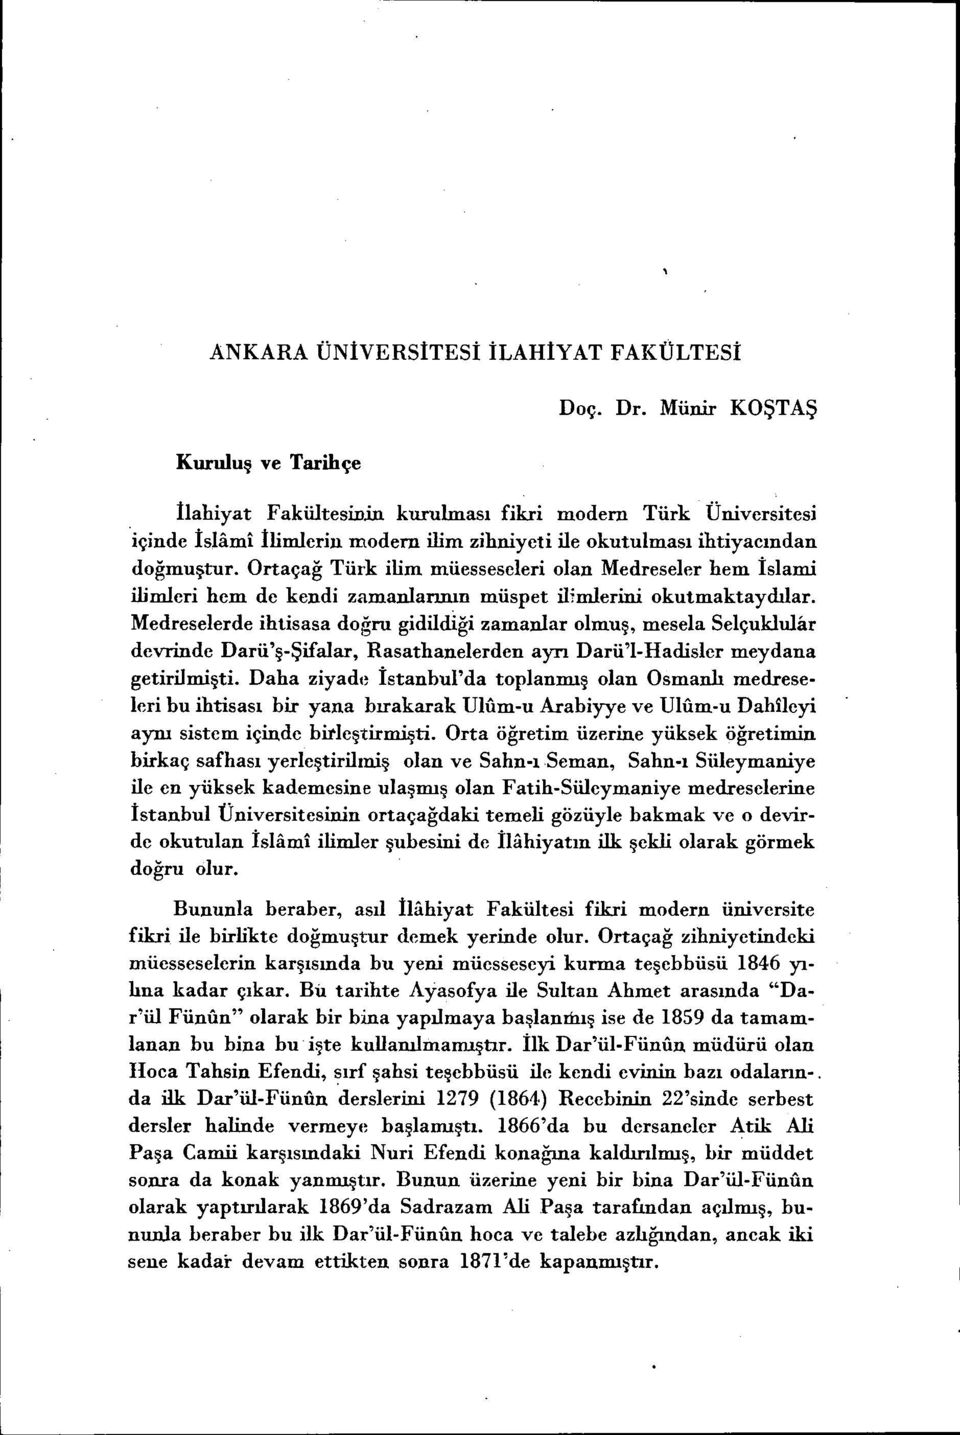 Ortaçağ Türk lm müesseseler olan Medreseler hem İslam lmler hem de kend zamanlarının müspet lmlern okutmaktaydılar.